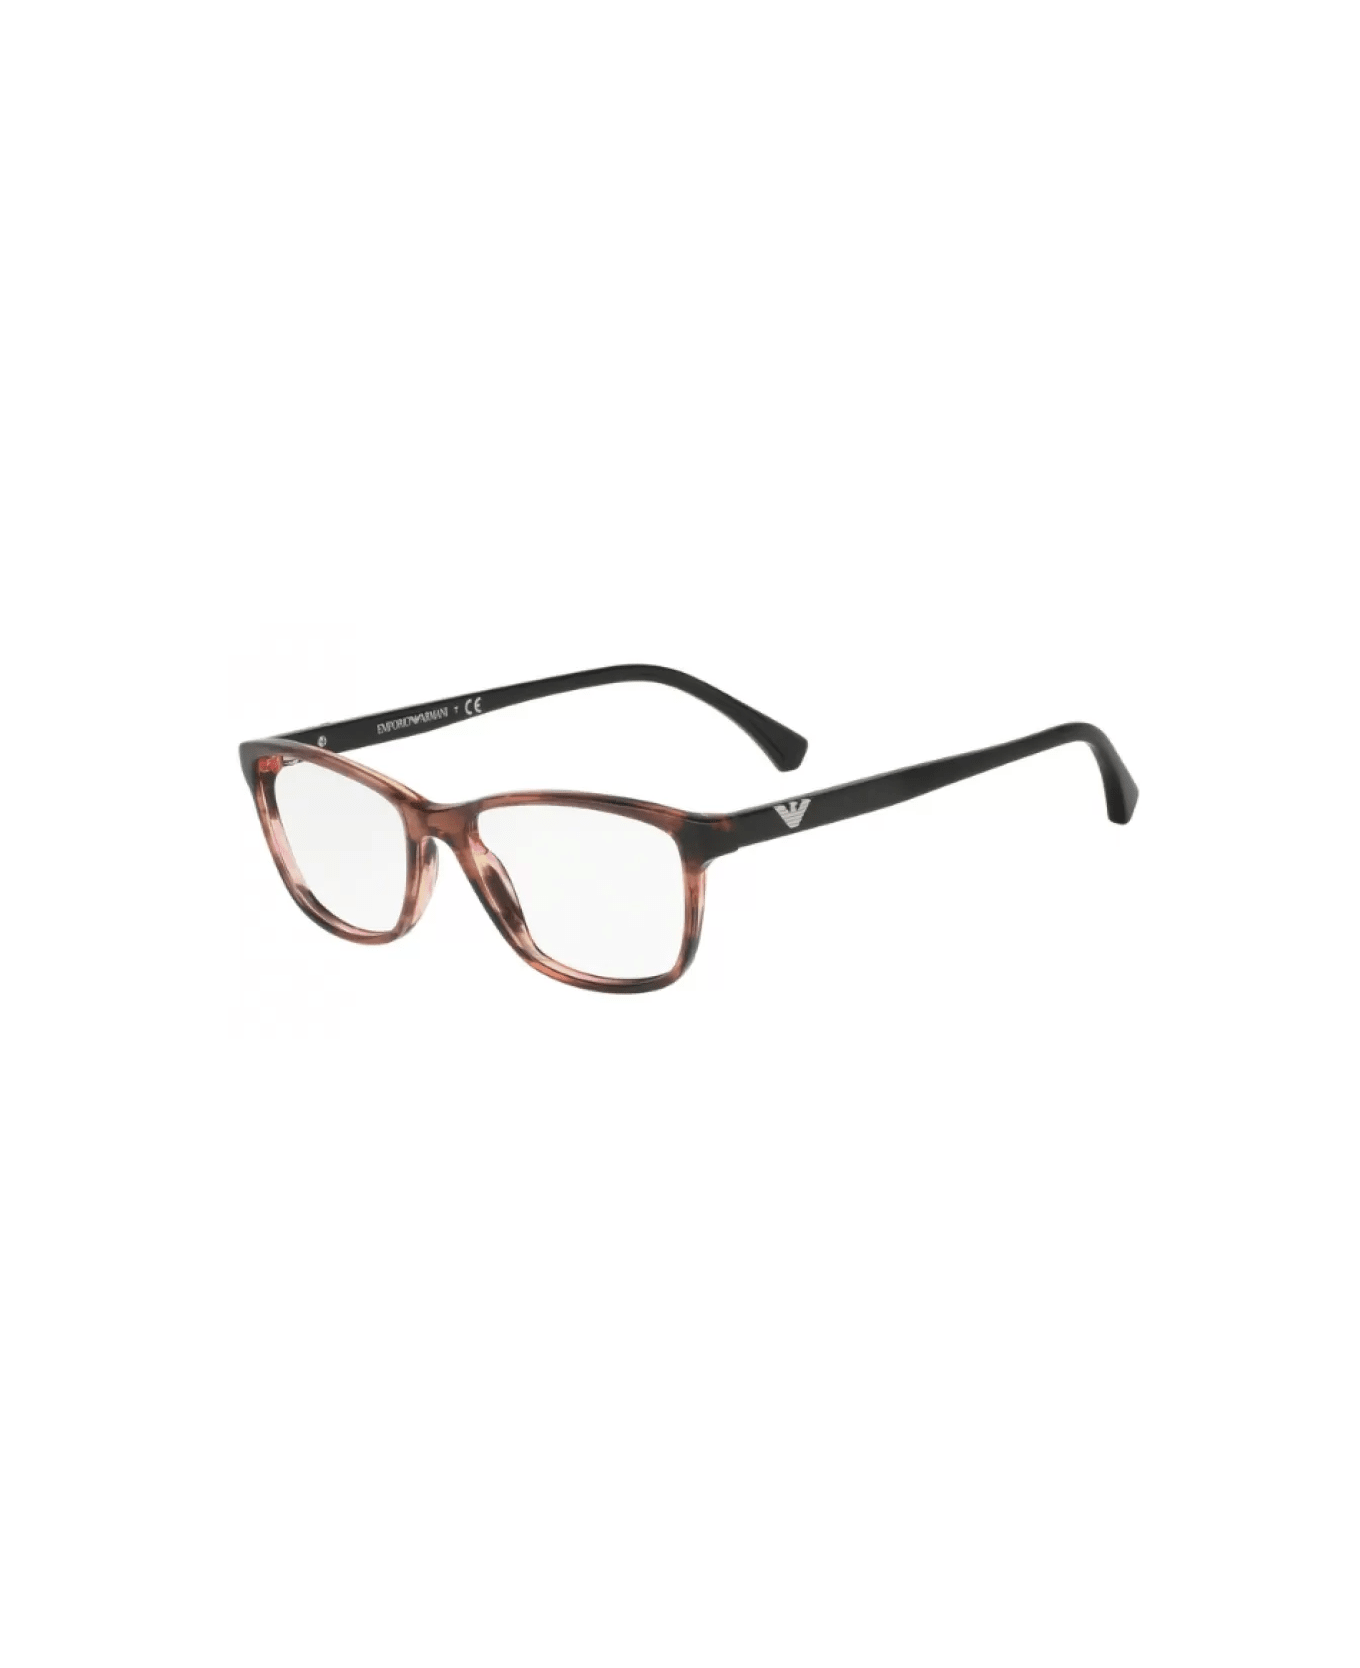 Emporio Armani EA3099 5553 Glasses